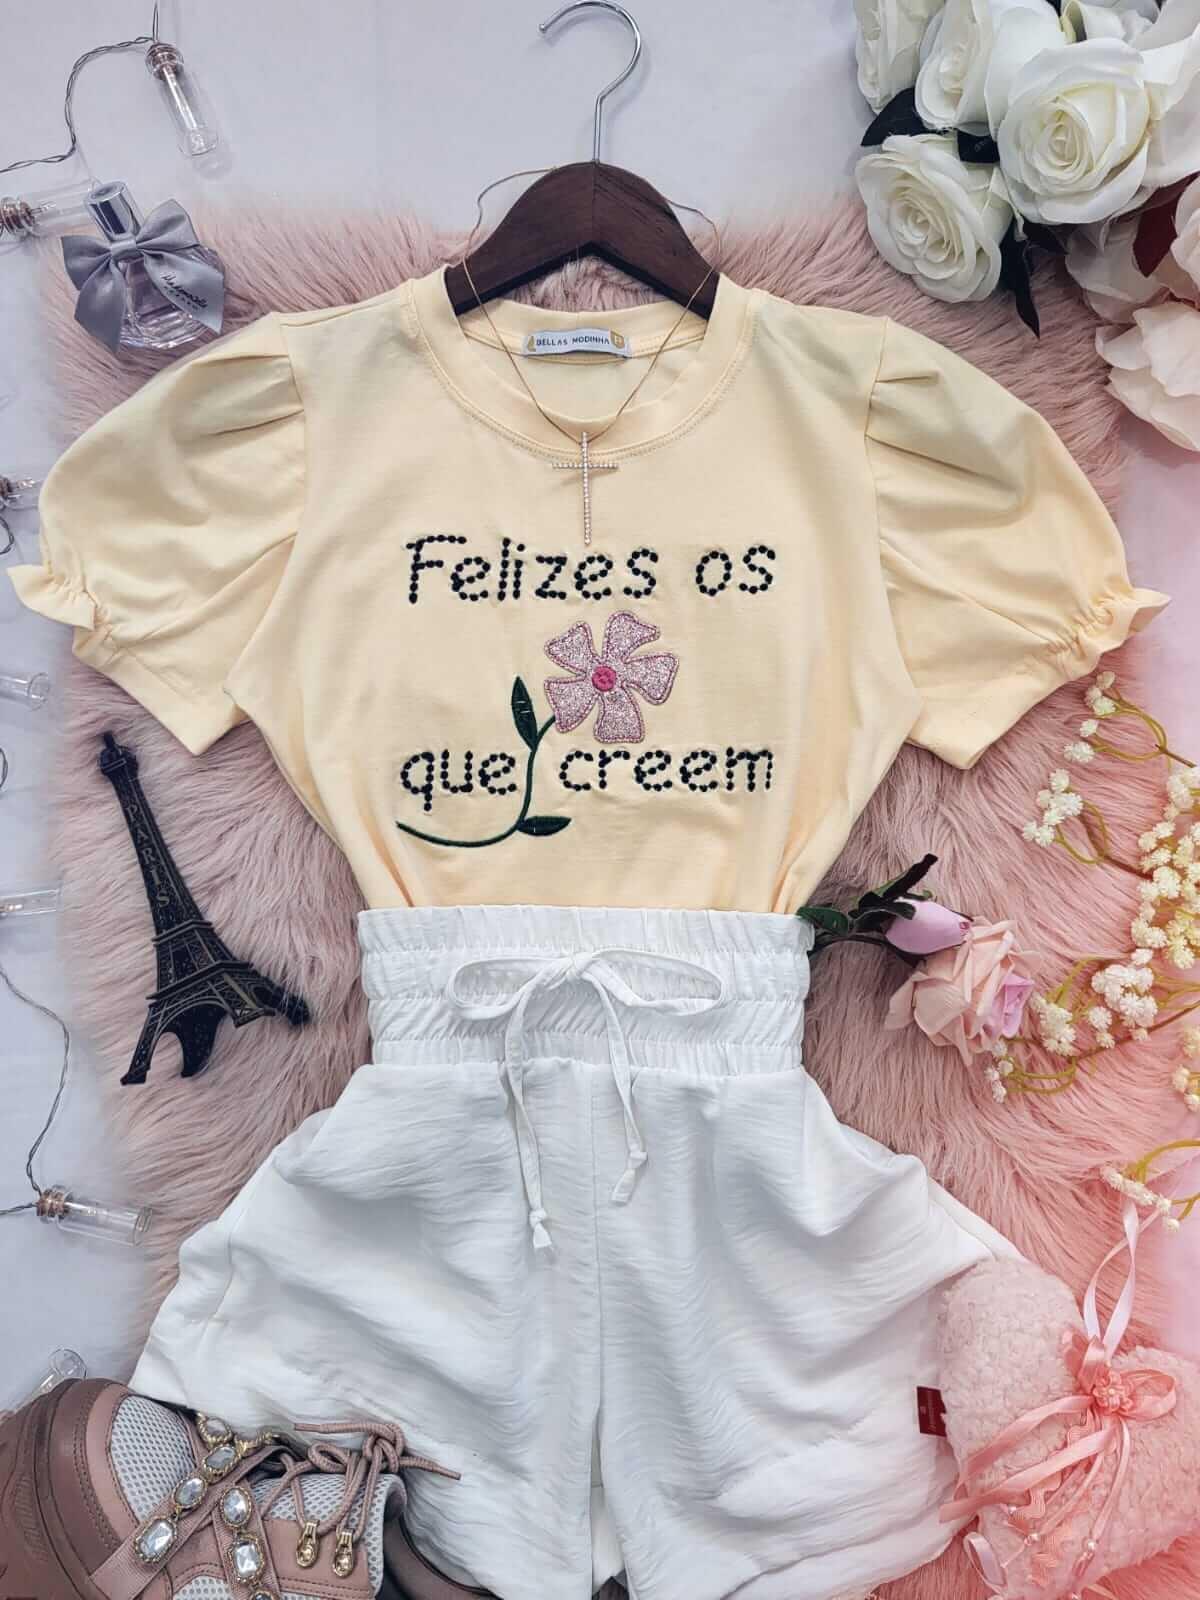 T-shirt Blusa Feminina de Luxo Bordada Frase Inspiradora Cinza - a